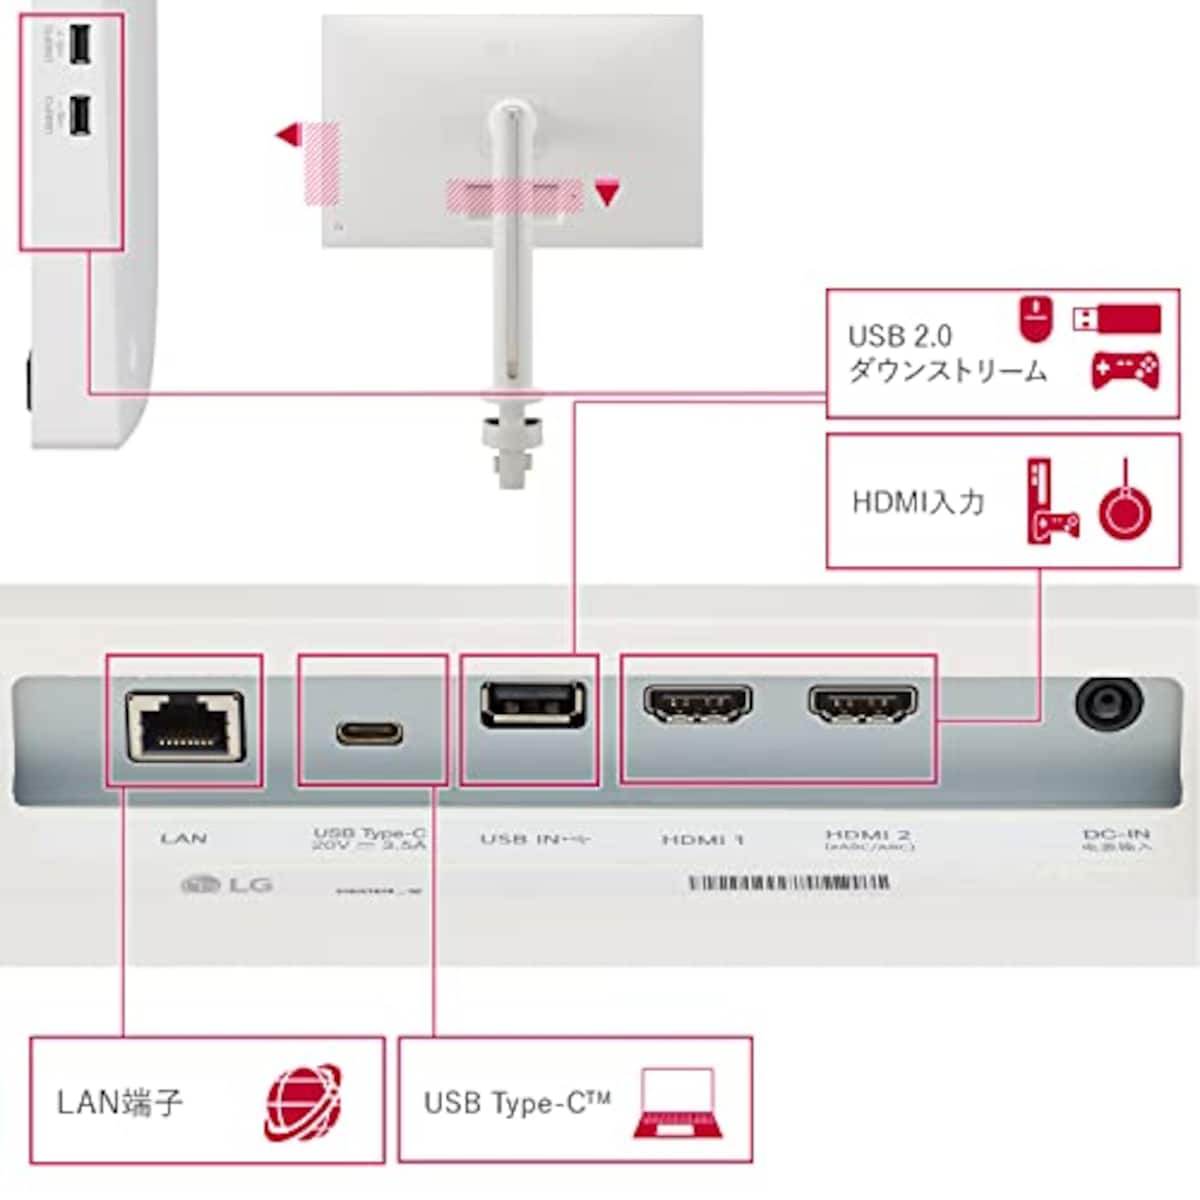  32SQ780S-W/LG スマートモニター/SMART Monitor / 31.5インチ 4K(3840×2160) / webOS22搭載 / VA/アンチグレア/AirPlay 2 / USB Type-C､eARC対応HDMI/エルゴノミックアーム/チルト､ピボット､スイベル､高さ調整対応画像19 